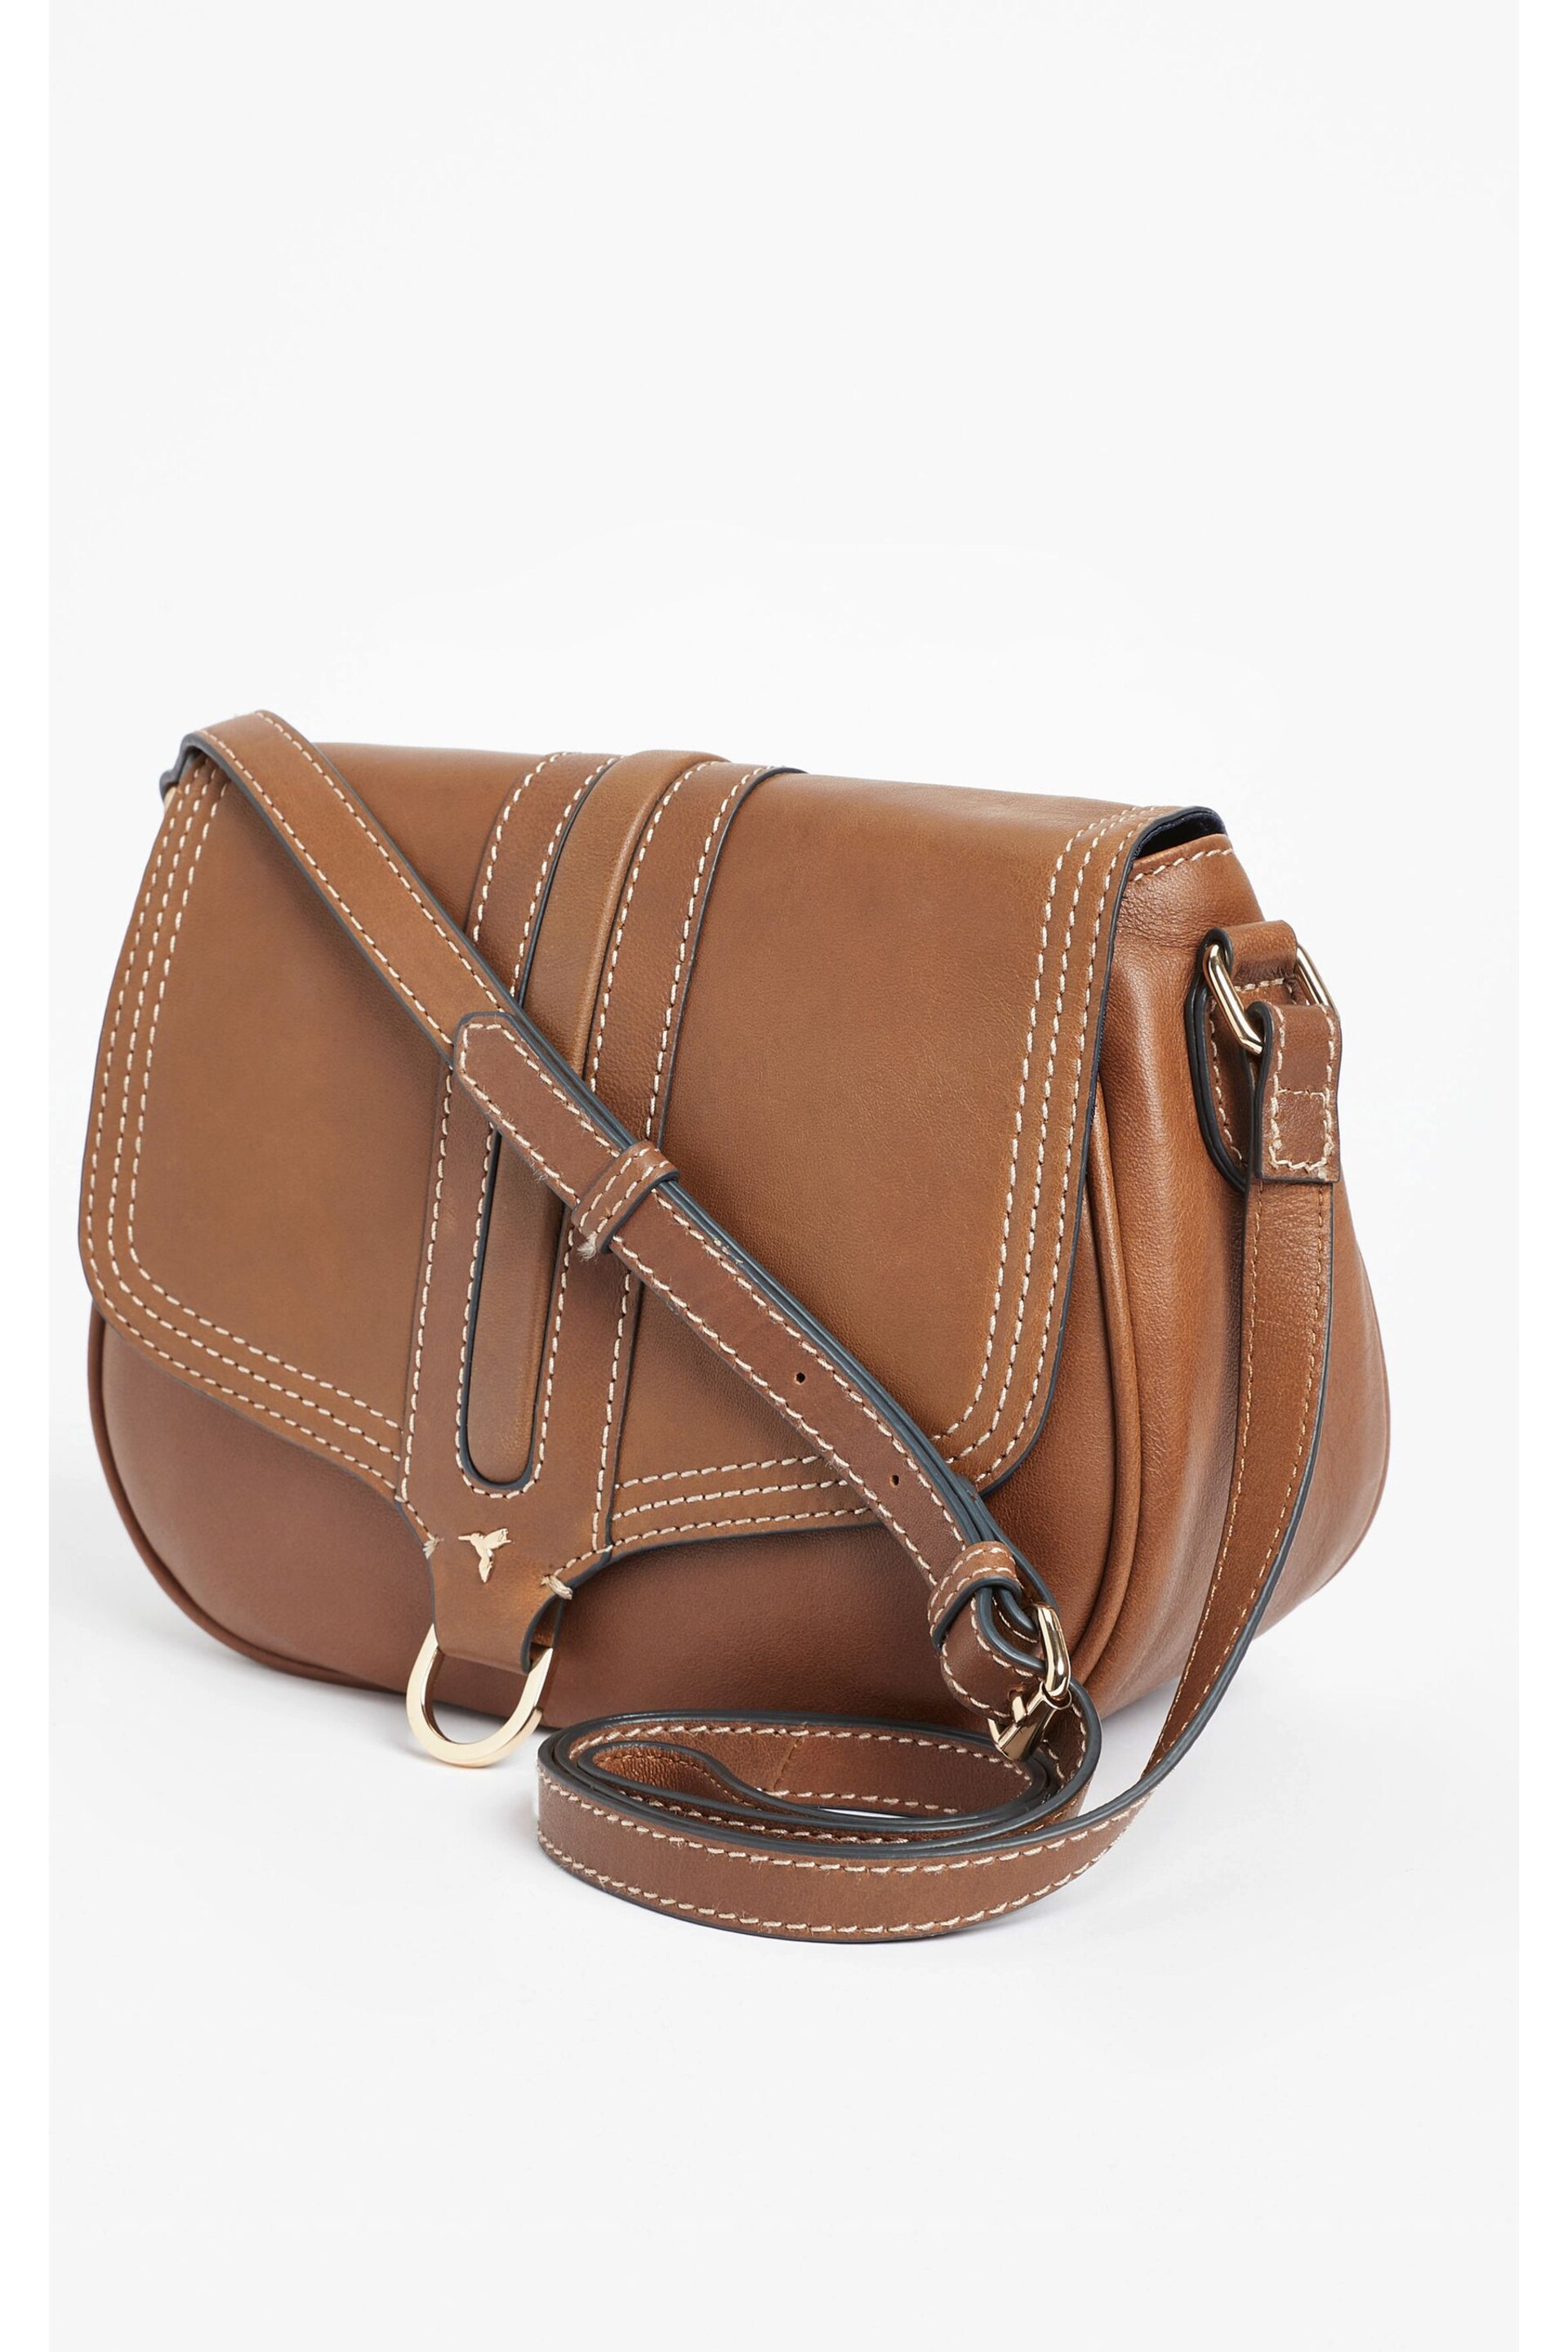 Tan Brown Premium Leather Hummingbird Cross-Body Bag - Image 3 of 4